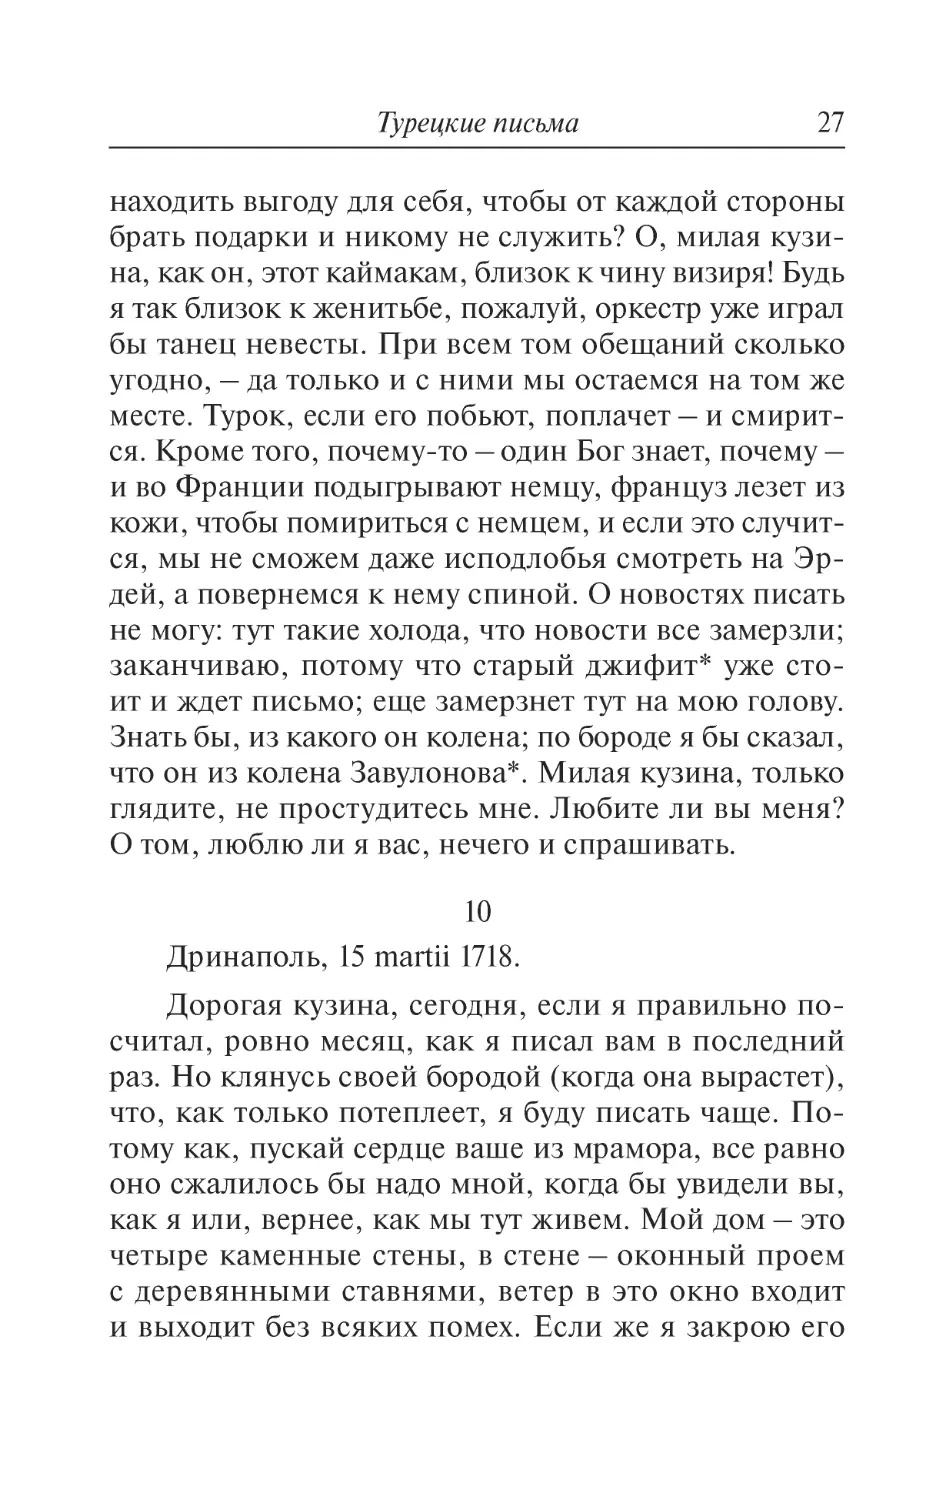 10. Дринаполь, 15 martii 1718